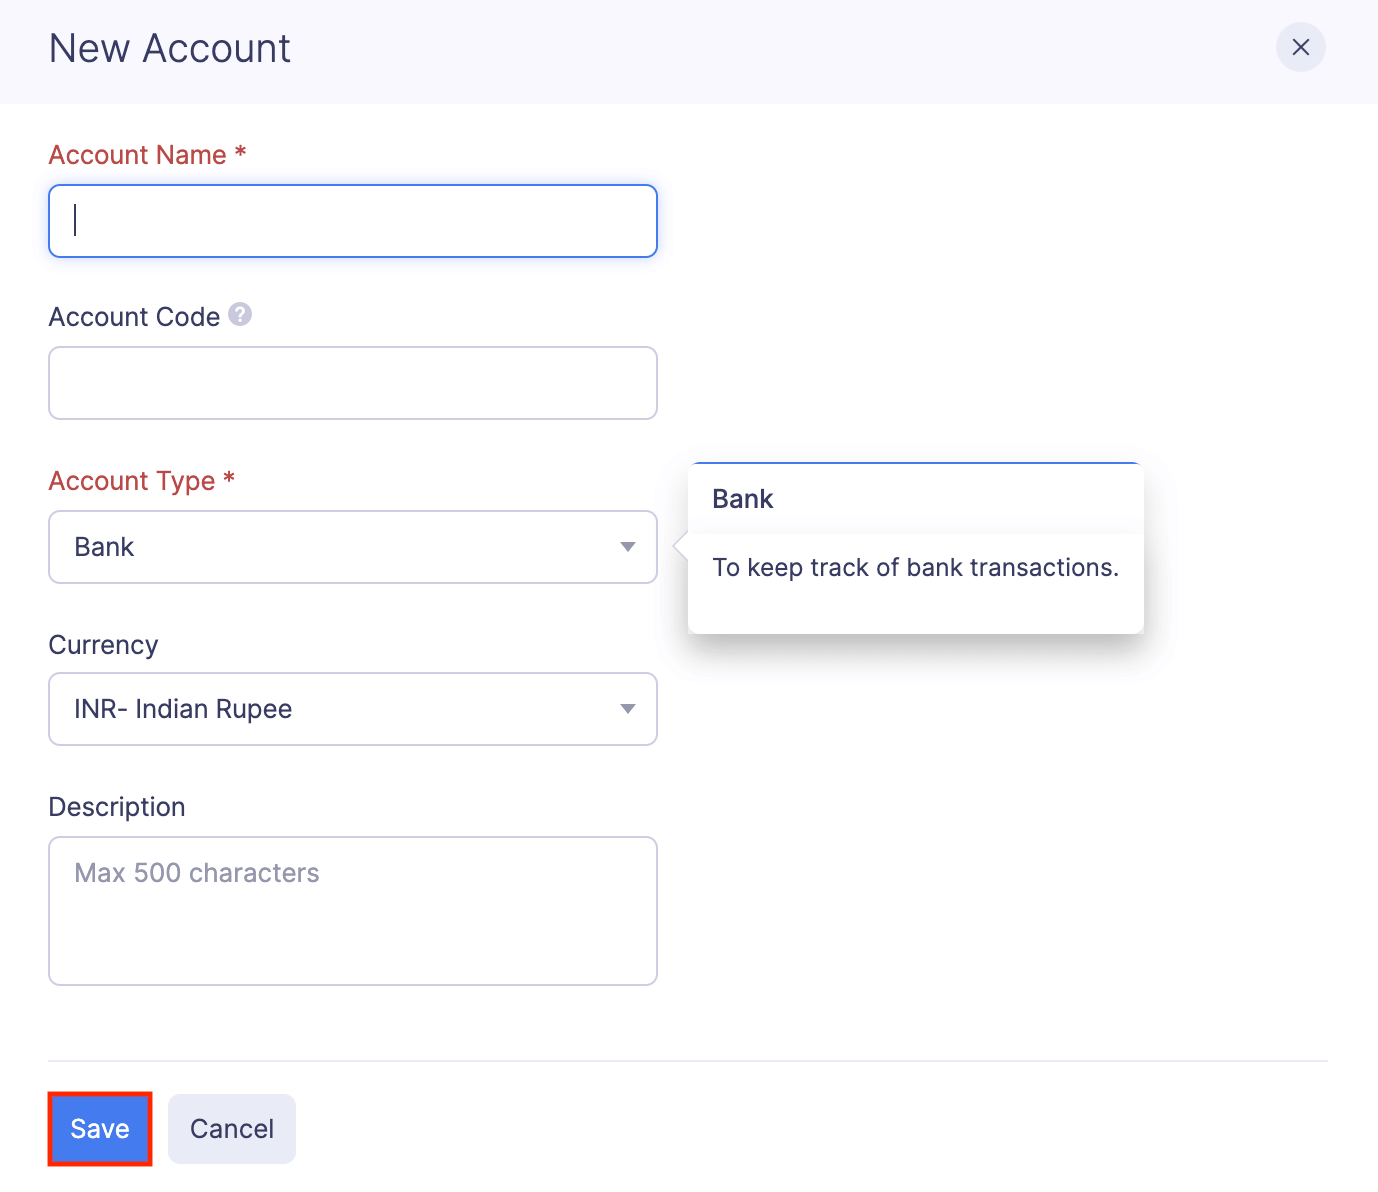 Add a Paid Through Account